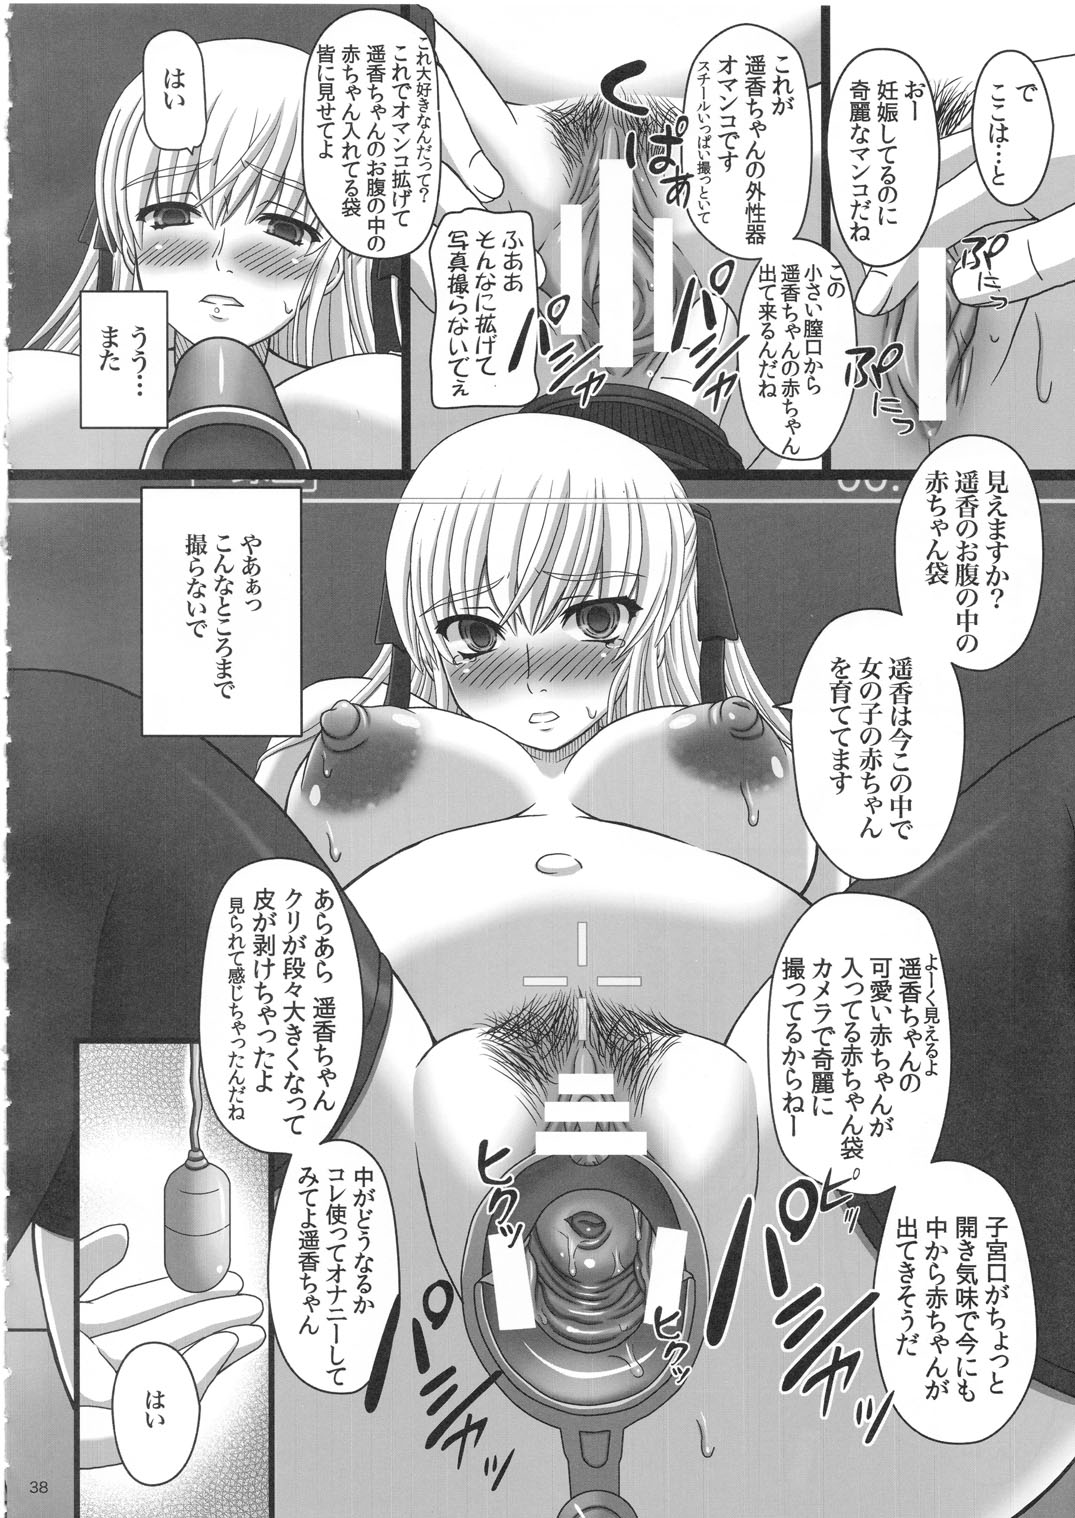 [Shiawase Kyouwakoku (Shiawase no Katachi)] Katashibu 25-shuu page 38 full